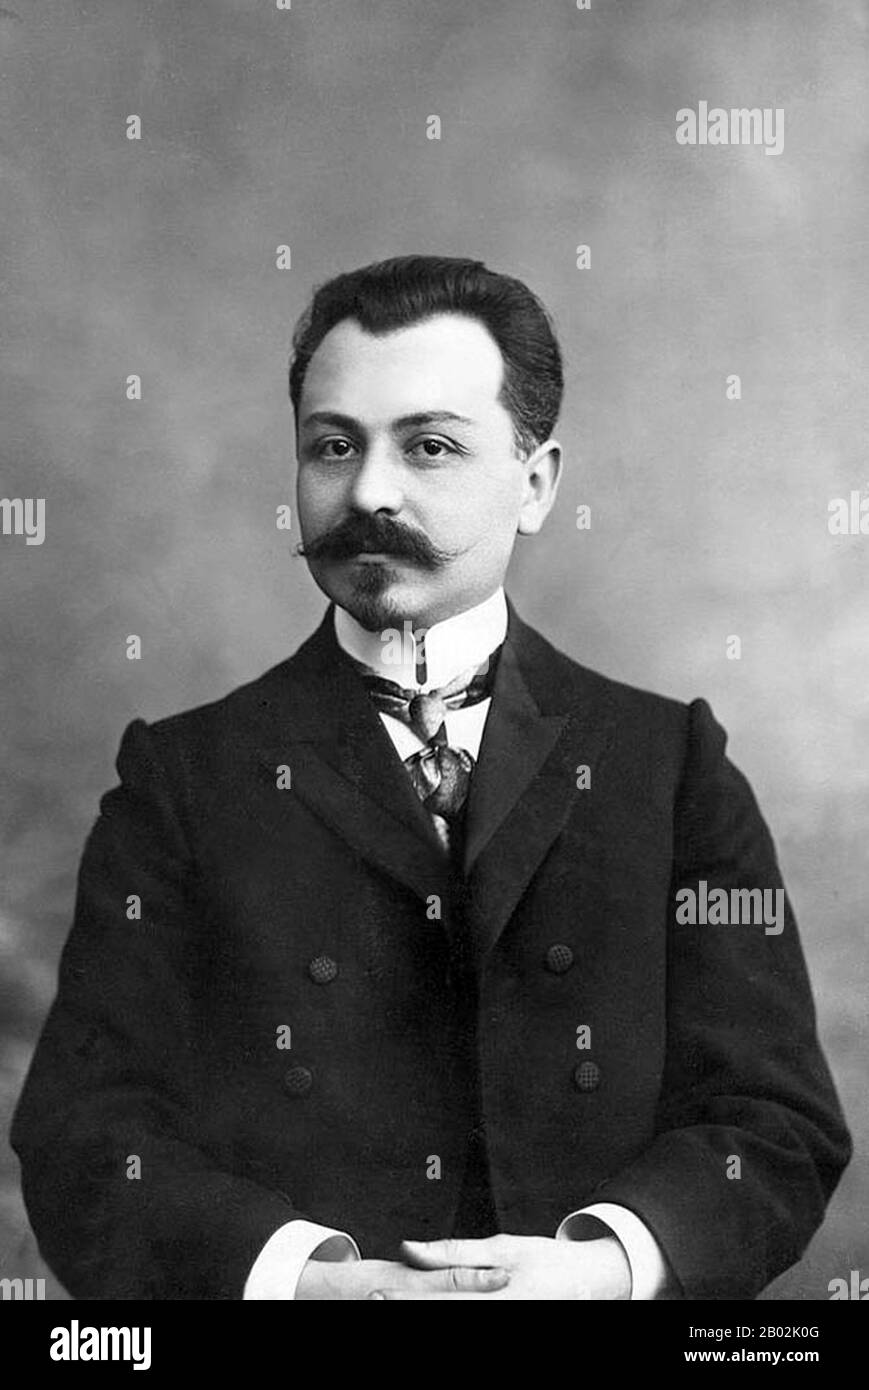 Fatali Khan Khoyski Isgender (7 dicembre 1875 – 19 giugno 1920) è stato un avvocato, membro Della Seconda Duma di Stato dell'Impero russo, ministro degli Affari interni, ministro della Difesa e, in seguito, primo ministro della Repubblica Democratica indipendente dell'Azerbaigian. Fatali-khan Khoyski fu assassinato a Tiflis il 19 giugno 1920 da Aram Yerganian come parte Dell'Operazione Nemesis organizzata dalla Federazione rivoluzionaria armena Foto Stock